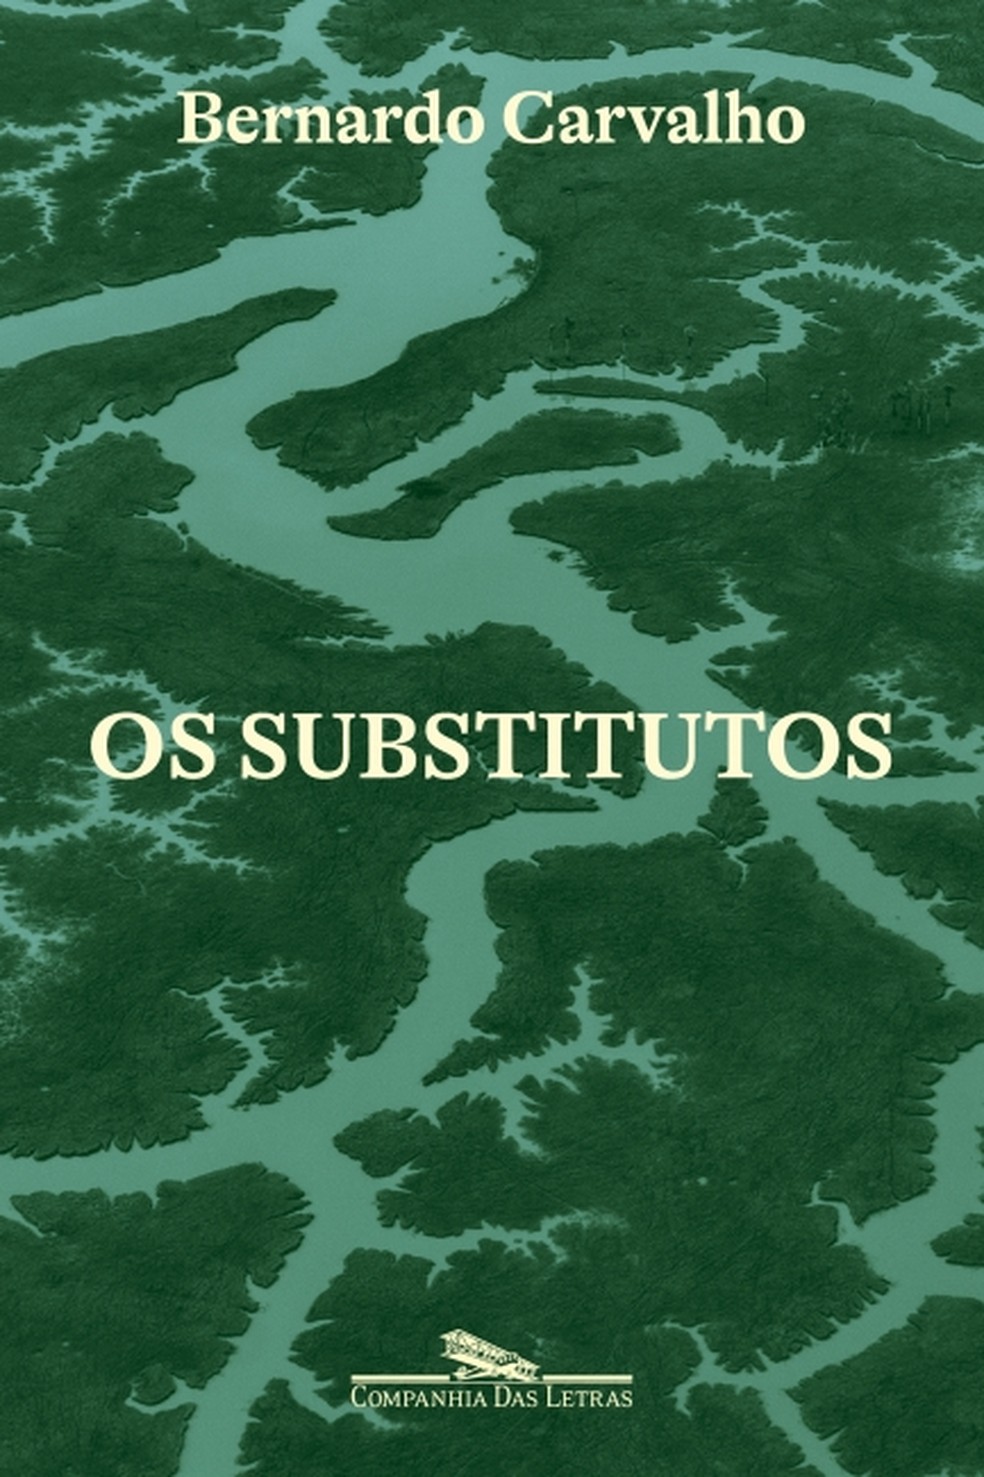 Capa do romance "Os substitutos", de Bernardo Carvalho, publicado pela Companhia das Letras — Foto: Reprodução